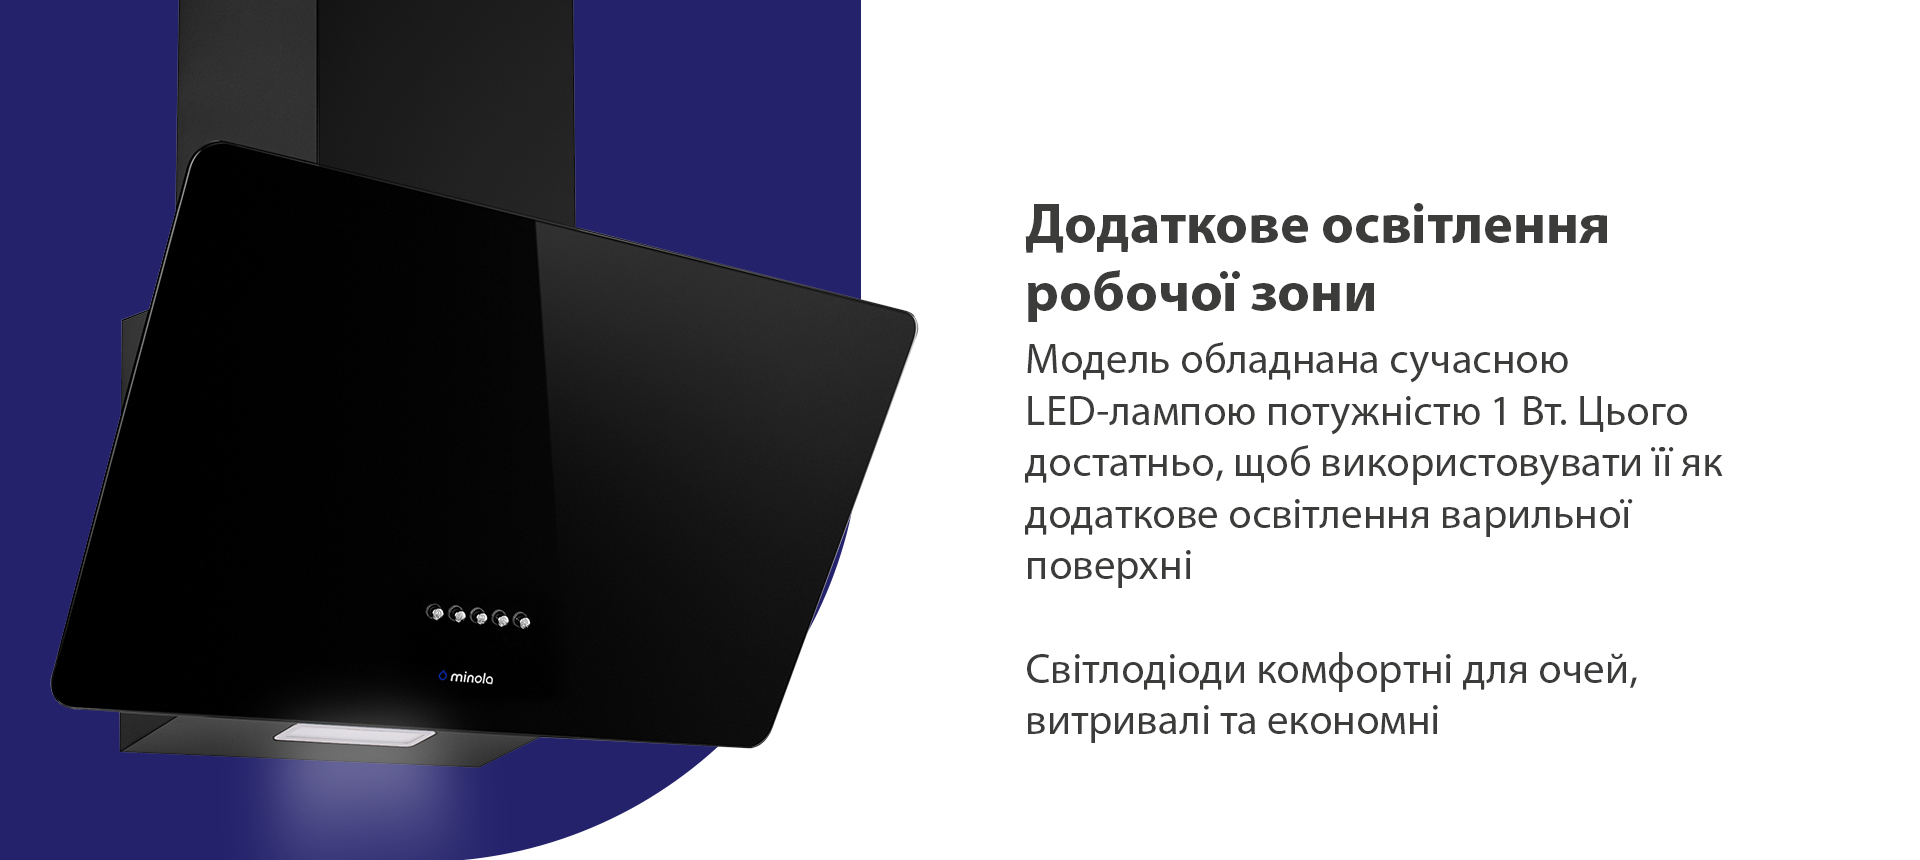 Модель обладнана сучасною LED-лампою потужністю 1 Вт